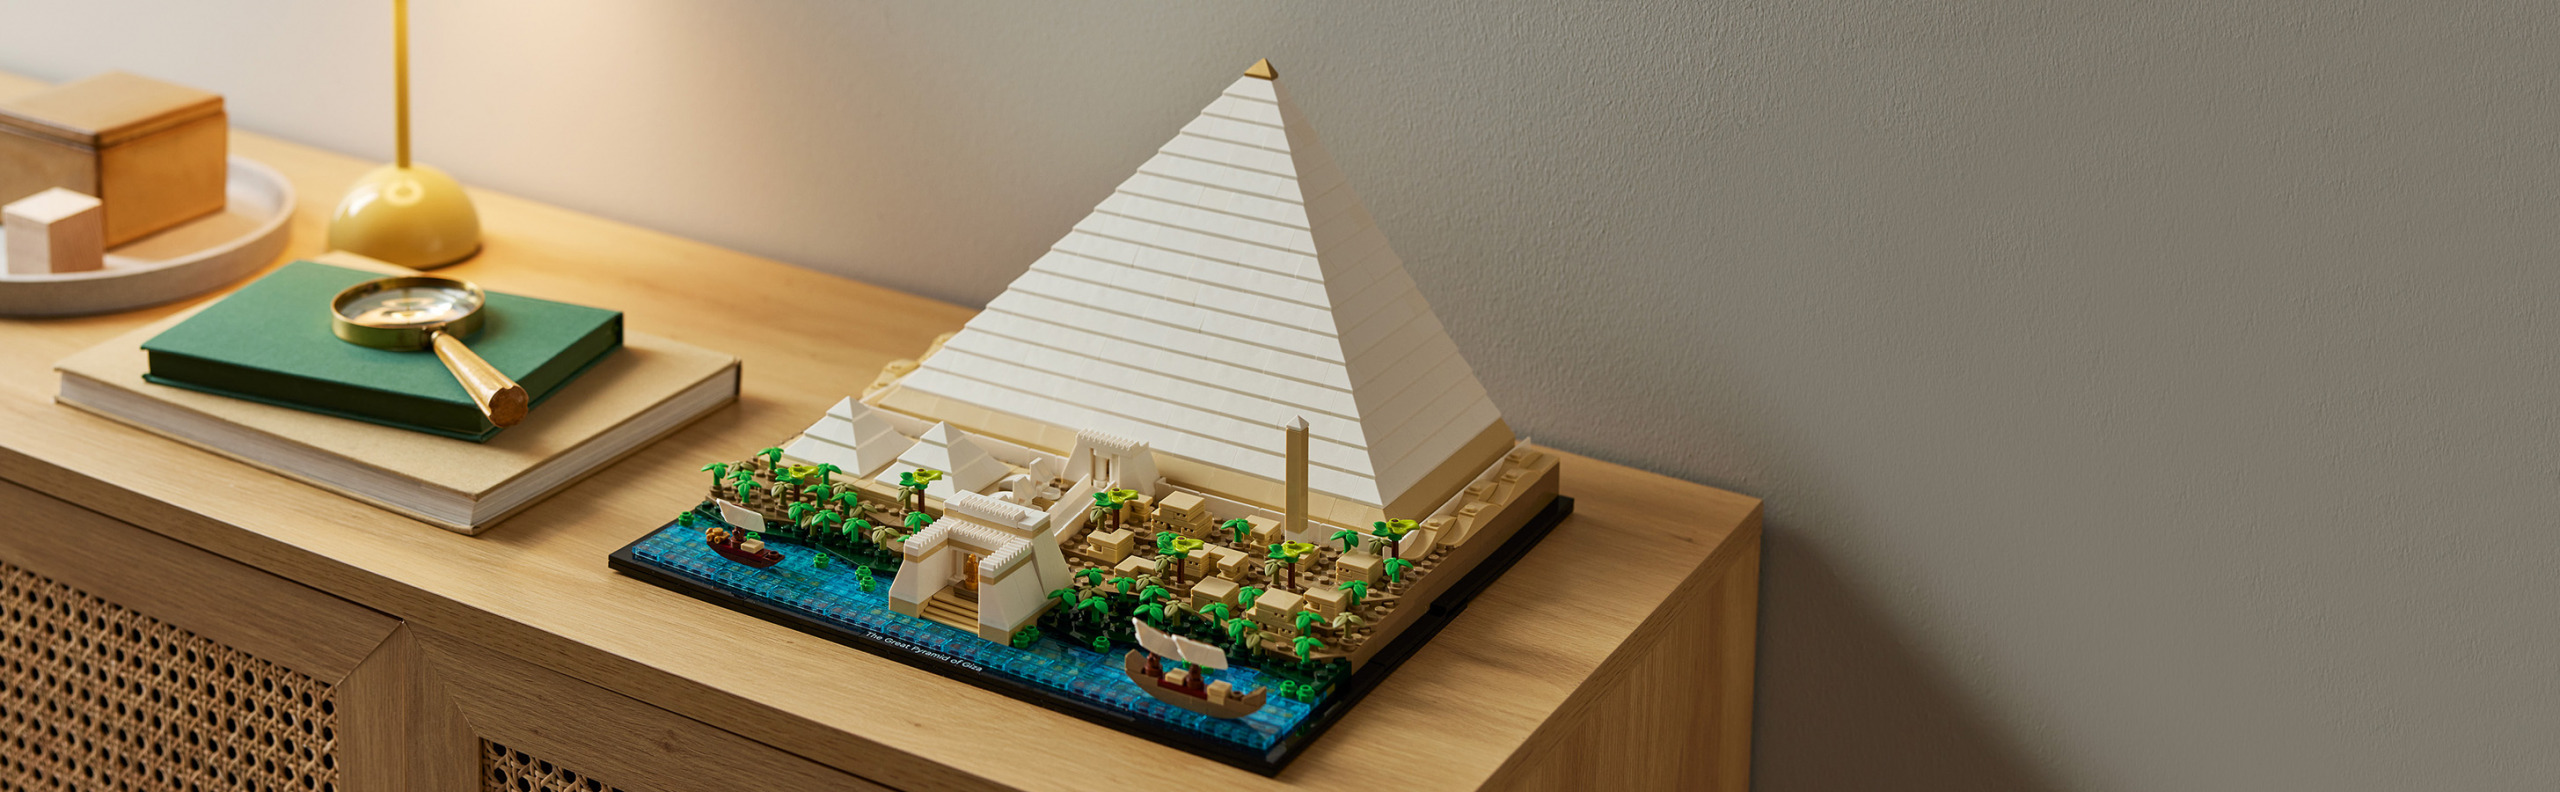 LEGO ARQUITETURA - Grande Pirâmide de Gizé - 21058